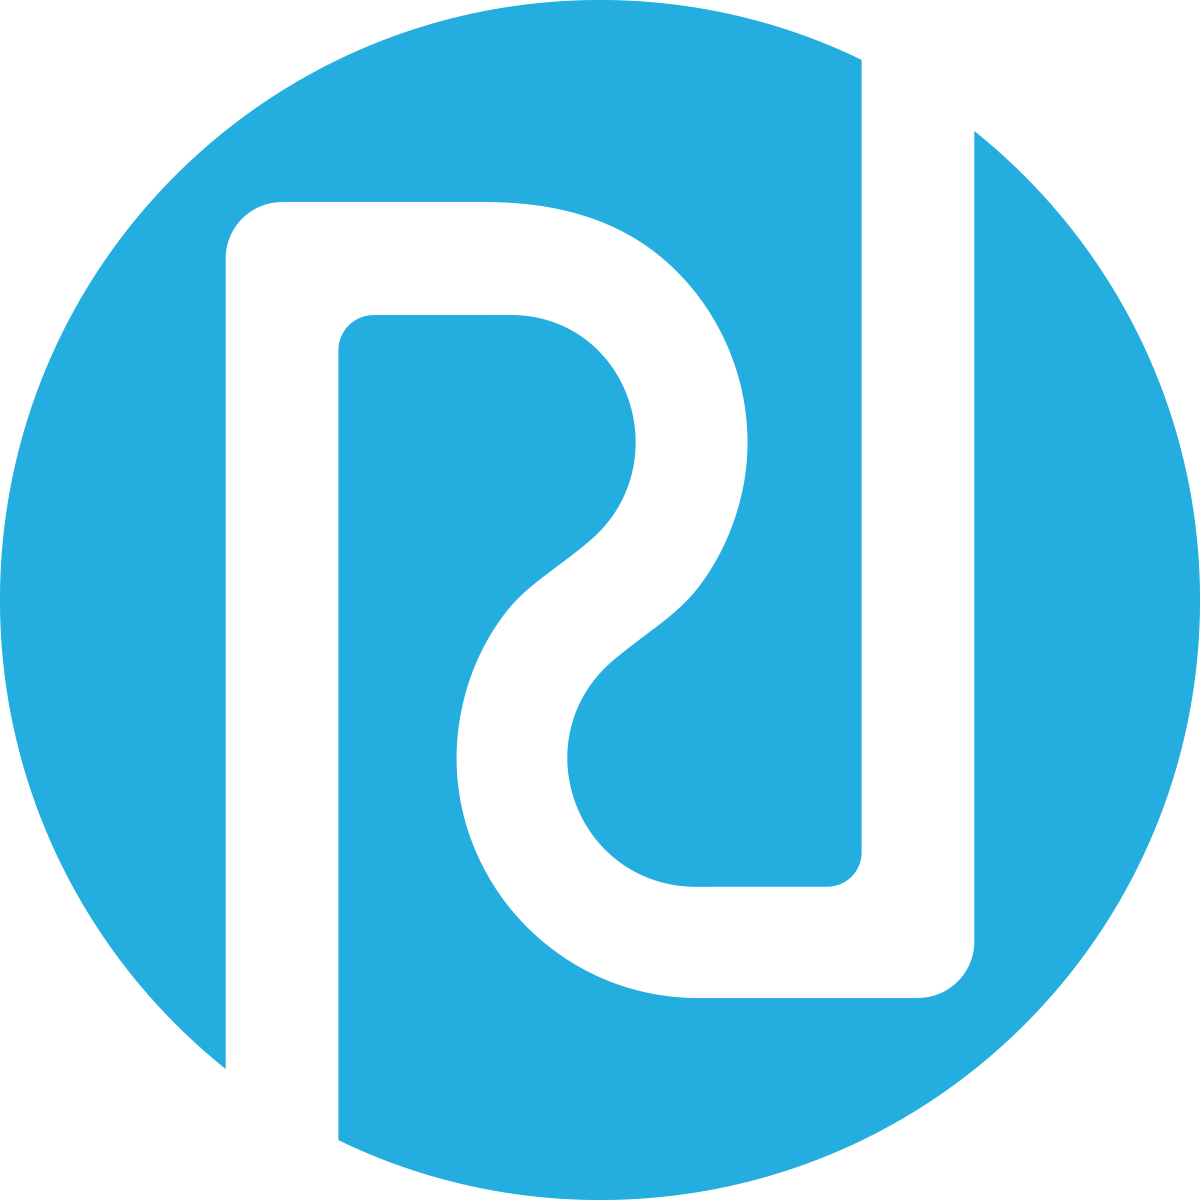 Regenstrief Institute logo